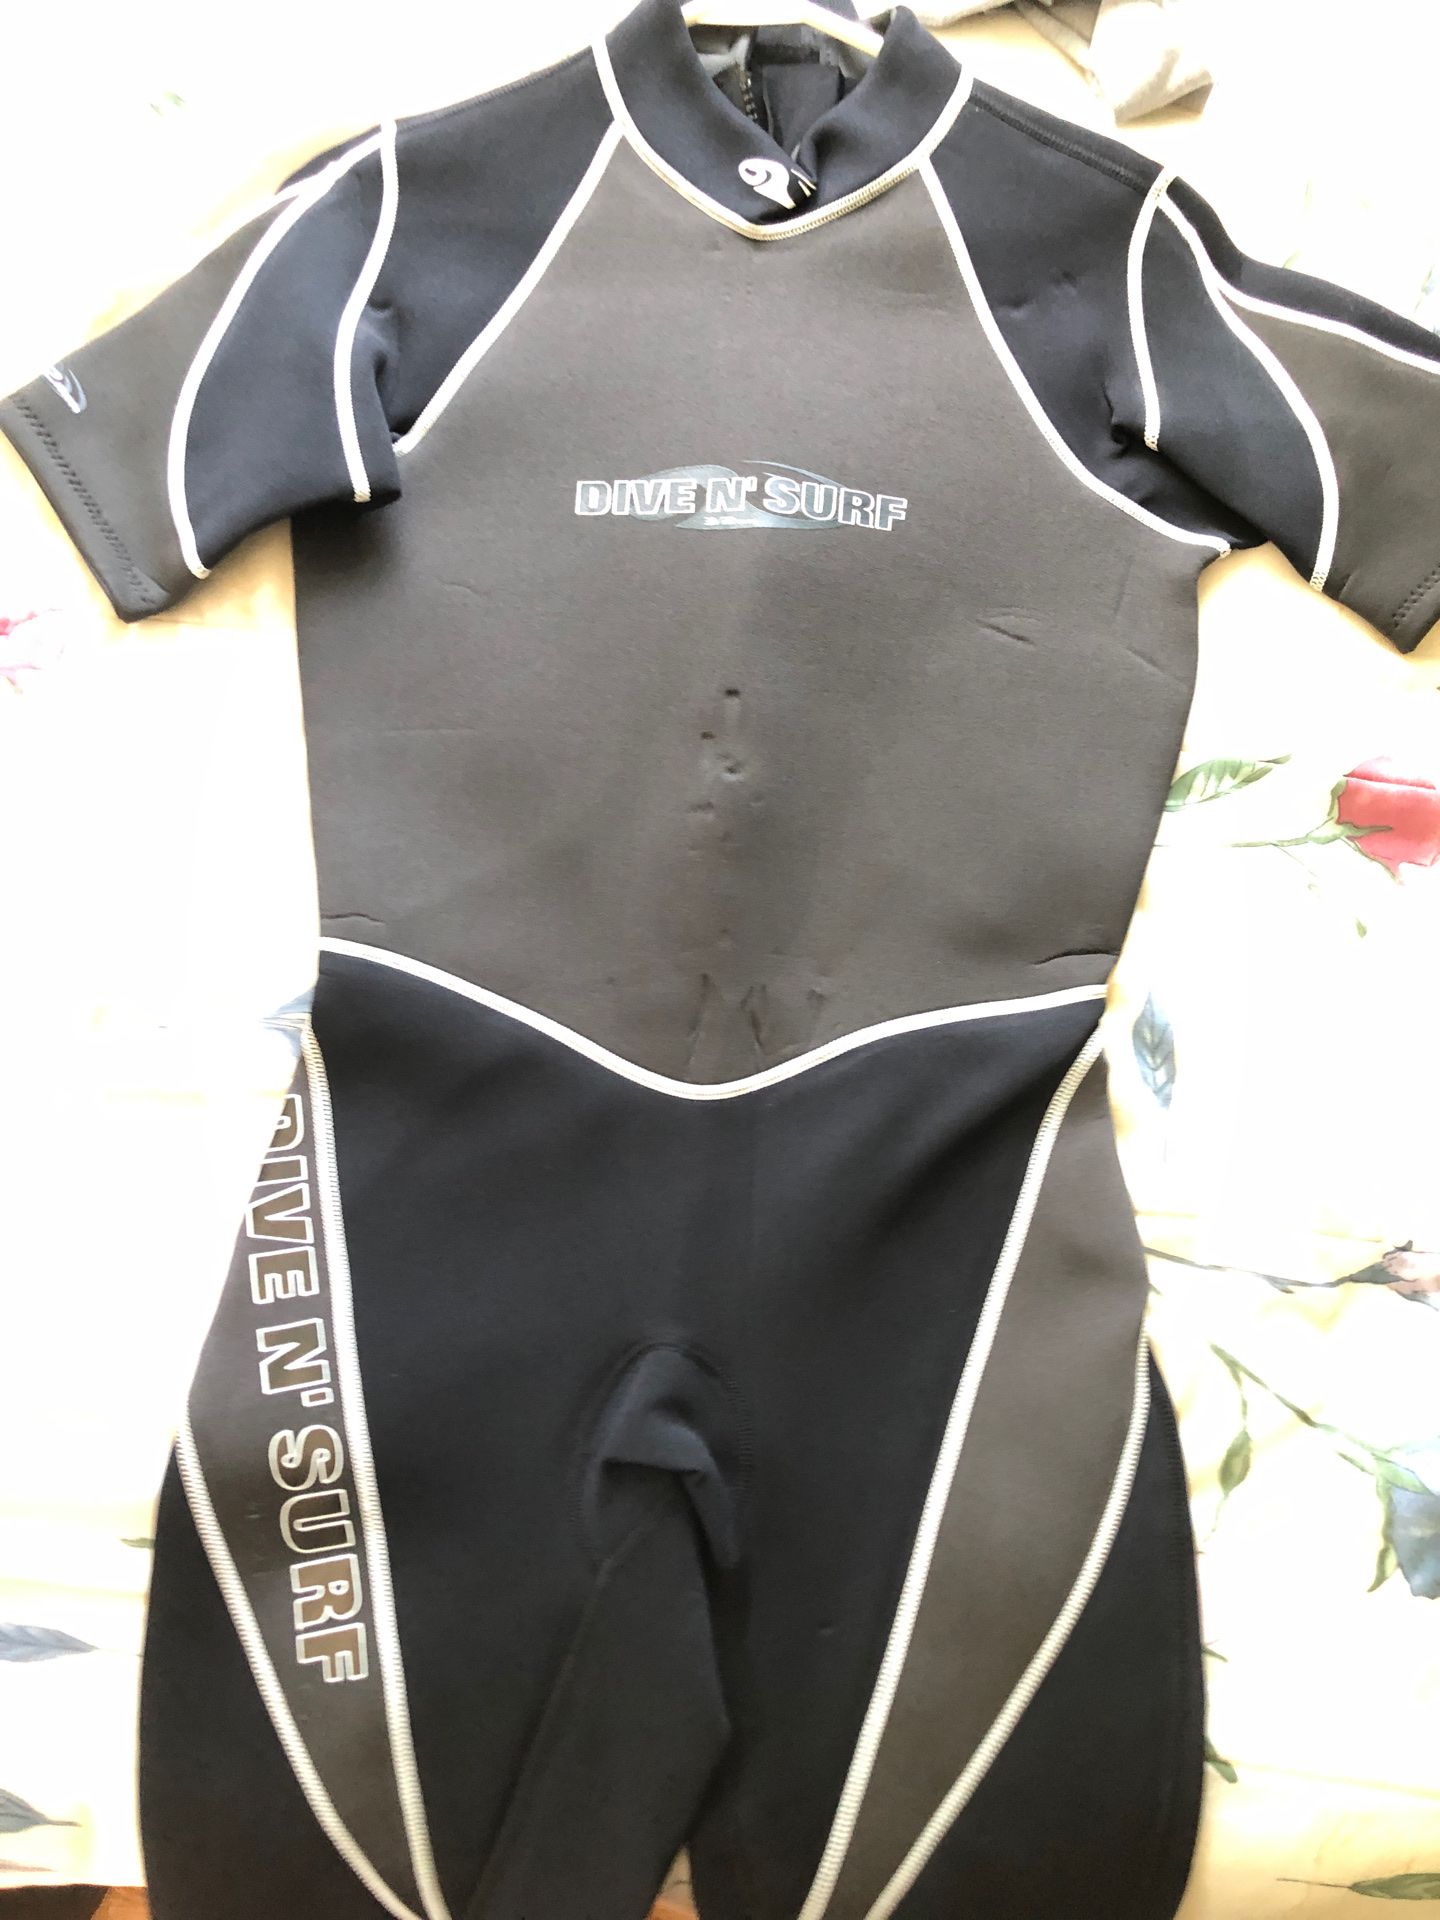 Dive n Surf wetsuit